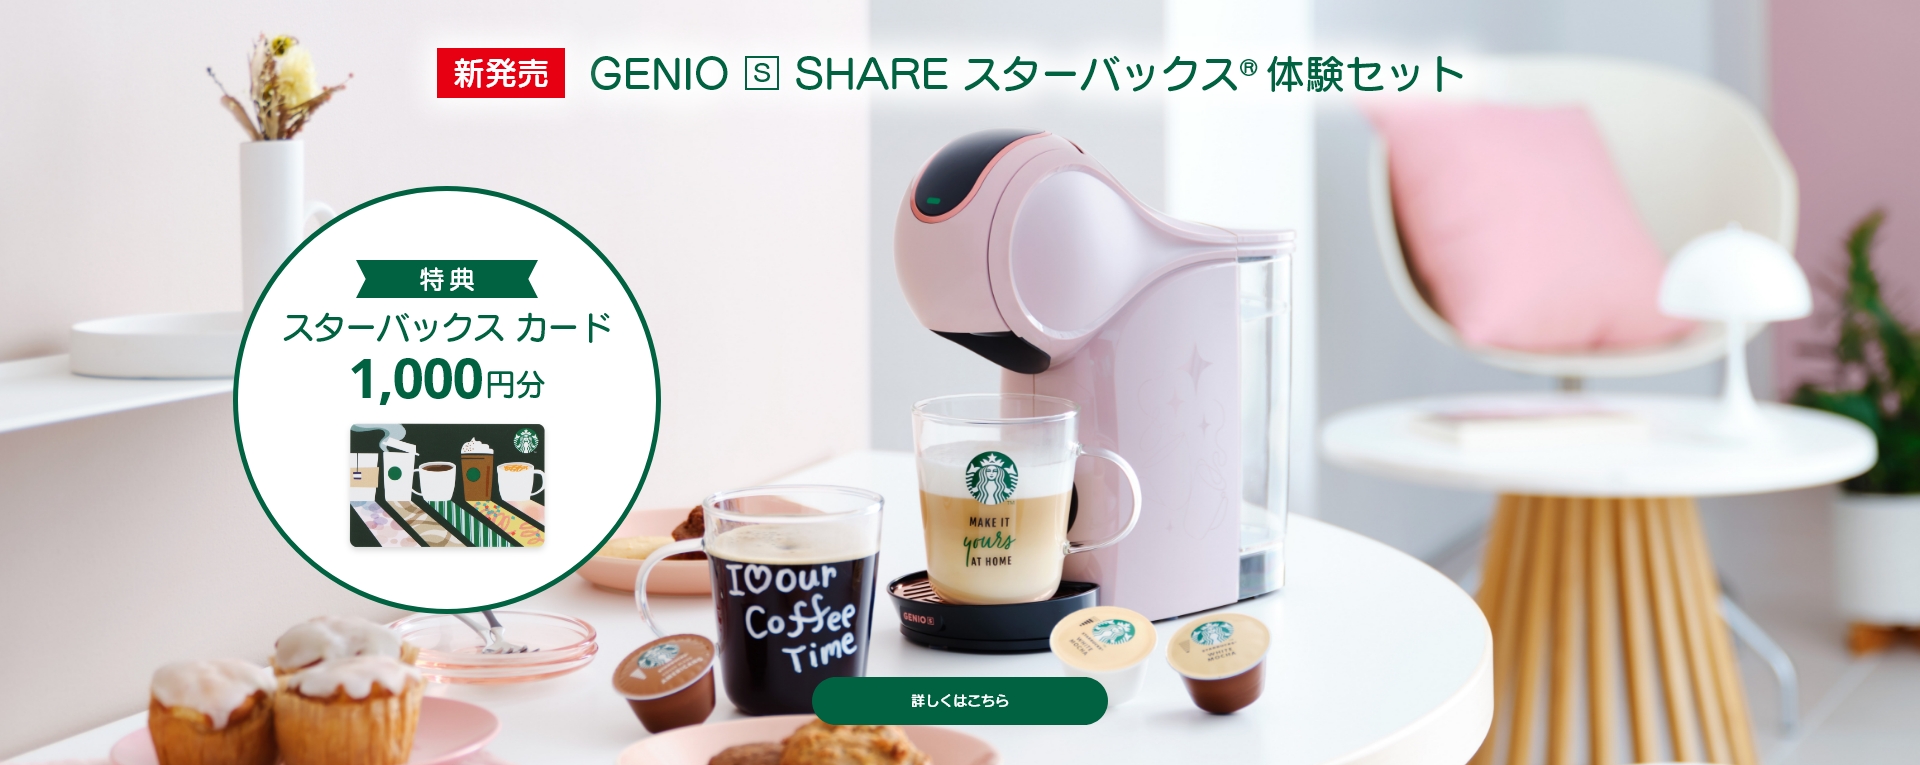 新発売 GENIO S SHARE スターバックス 体験セット